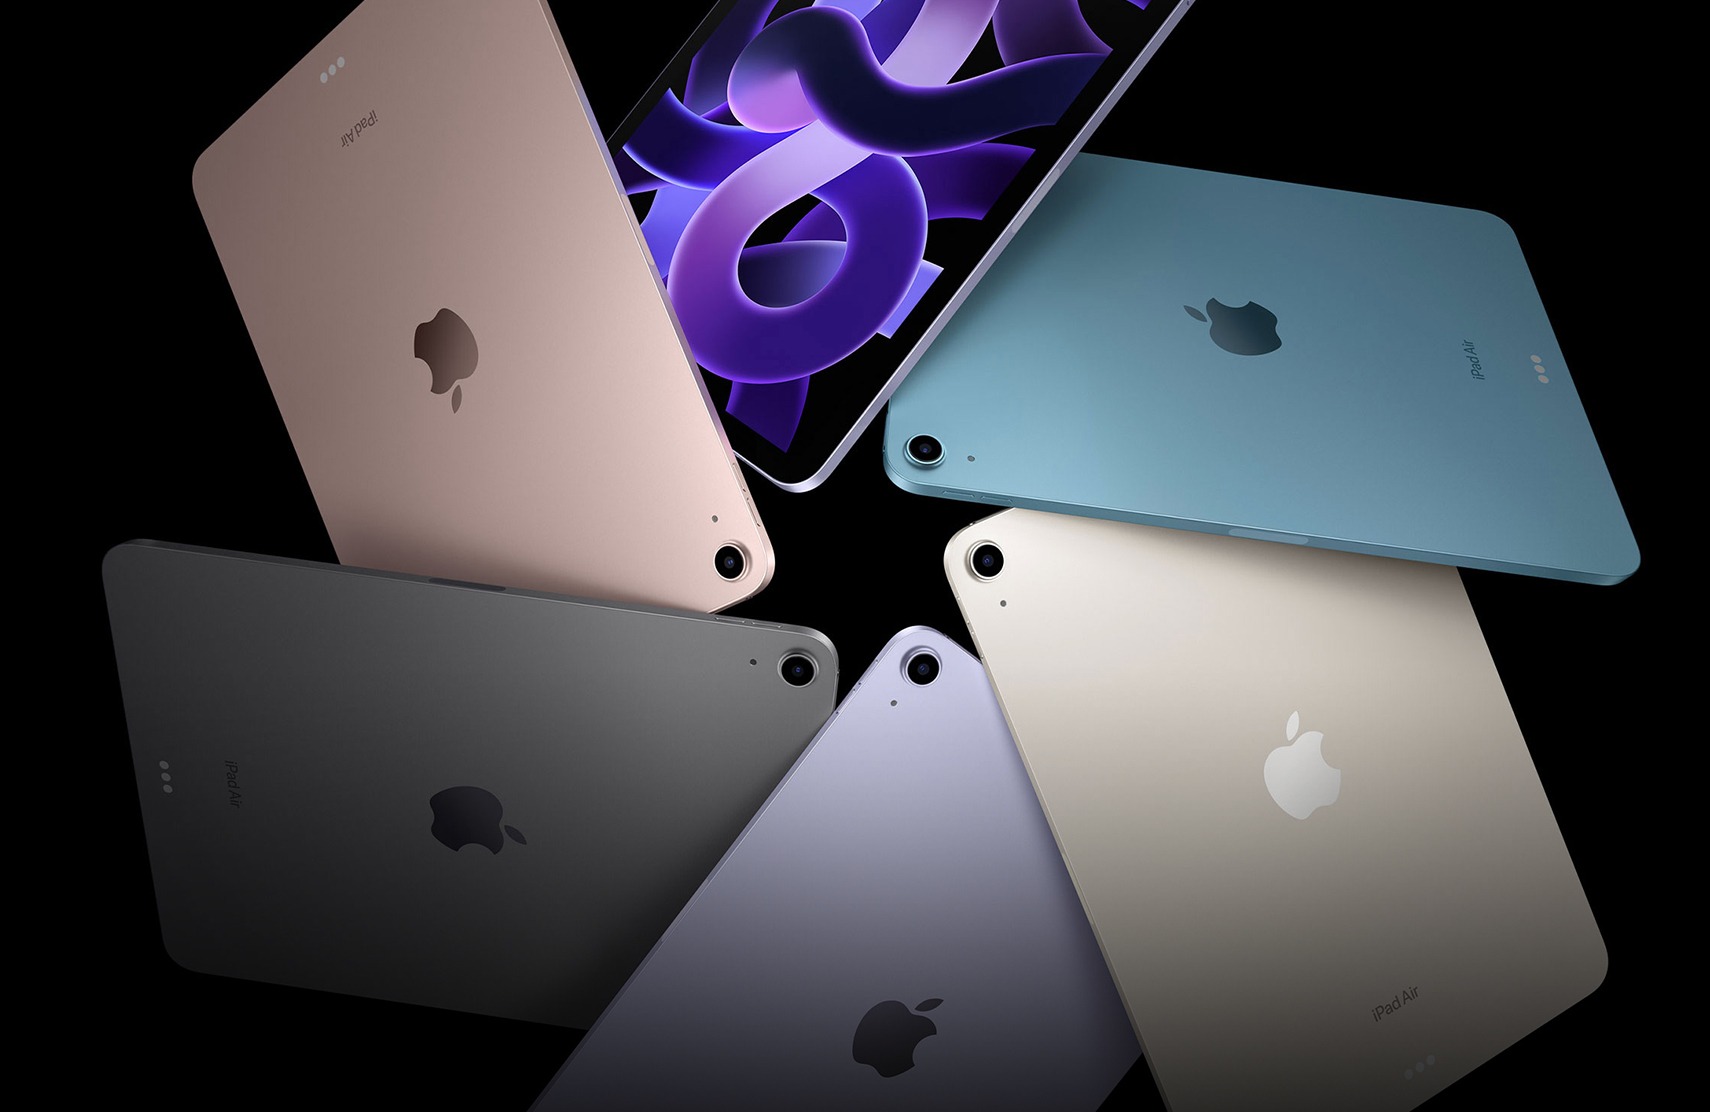 Po iPadzie Pro: Apple zmieni tablety iPad Air na wyświetlacze OLED w 2028 roku